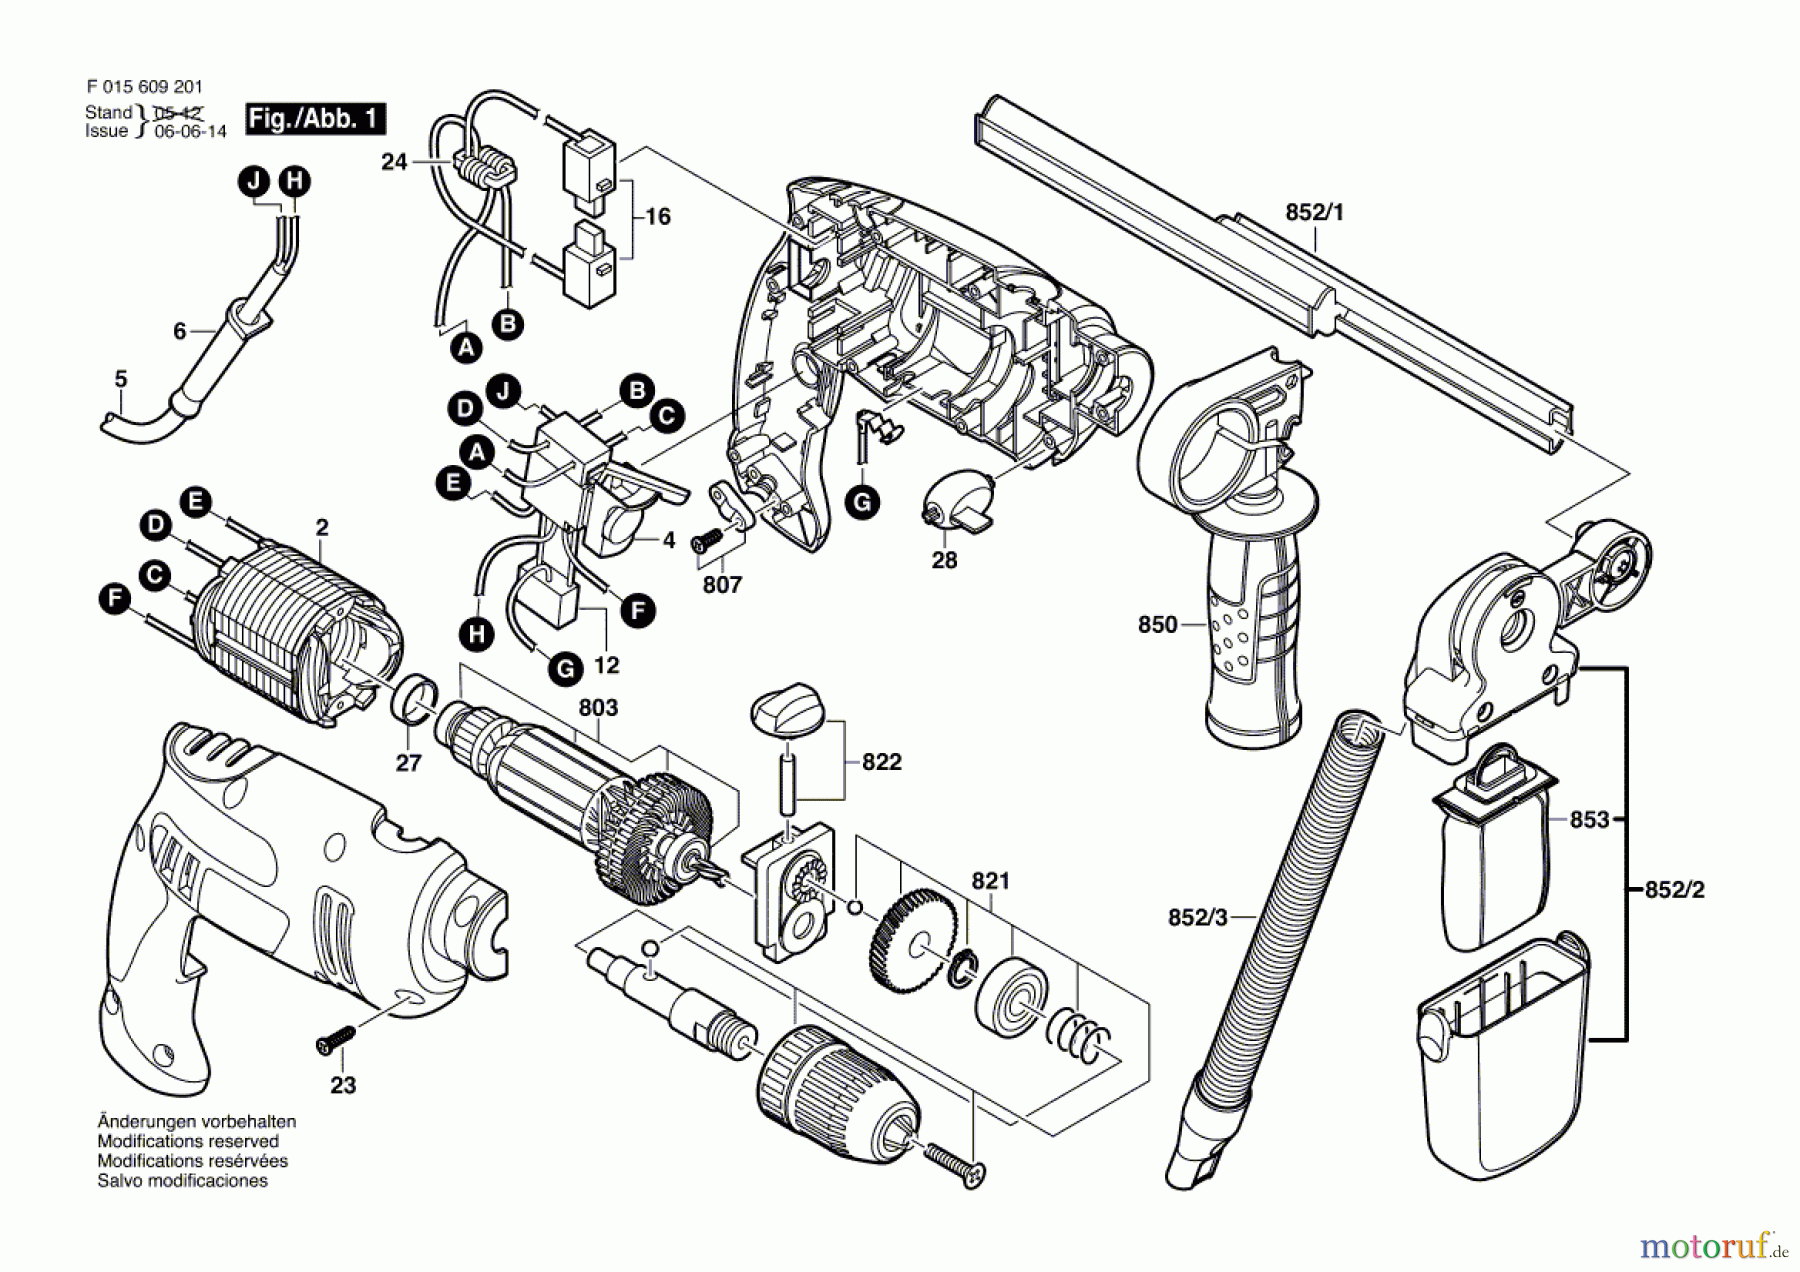  Bosch Werkzeug Schlagbohrmaschine 6092 Seite 1